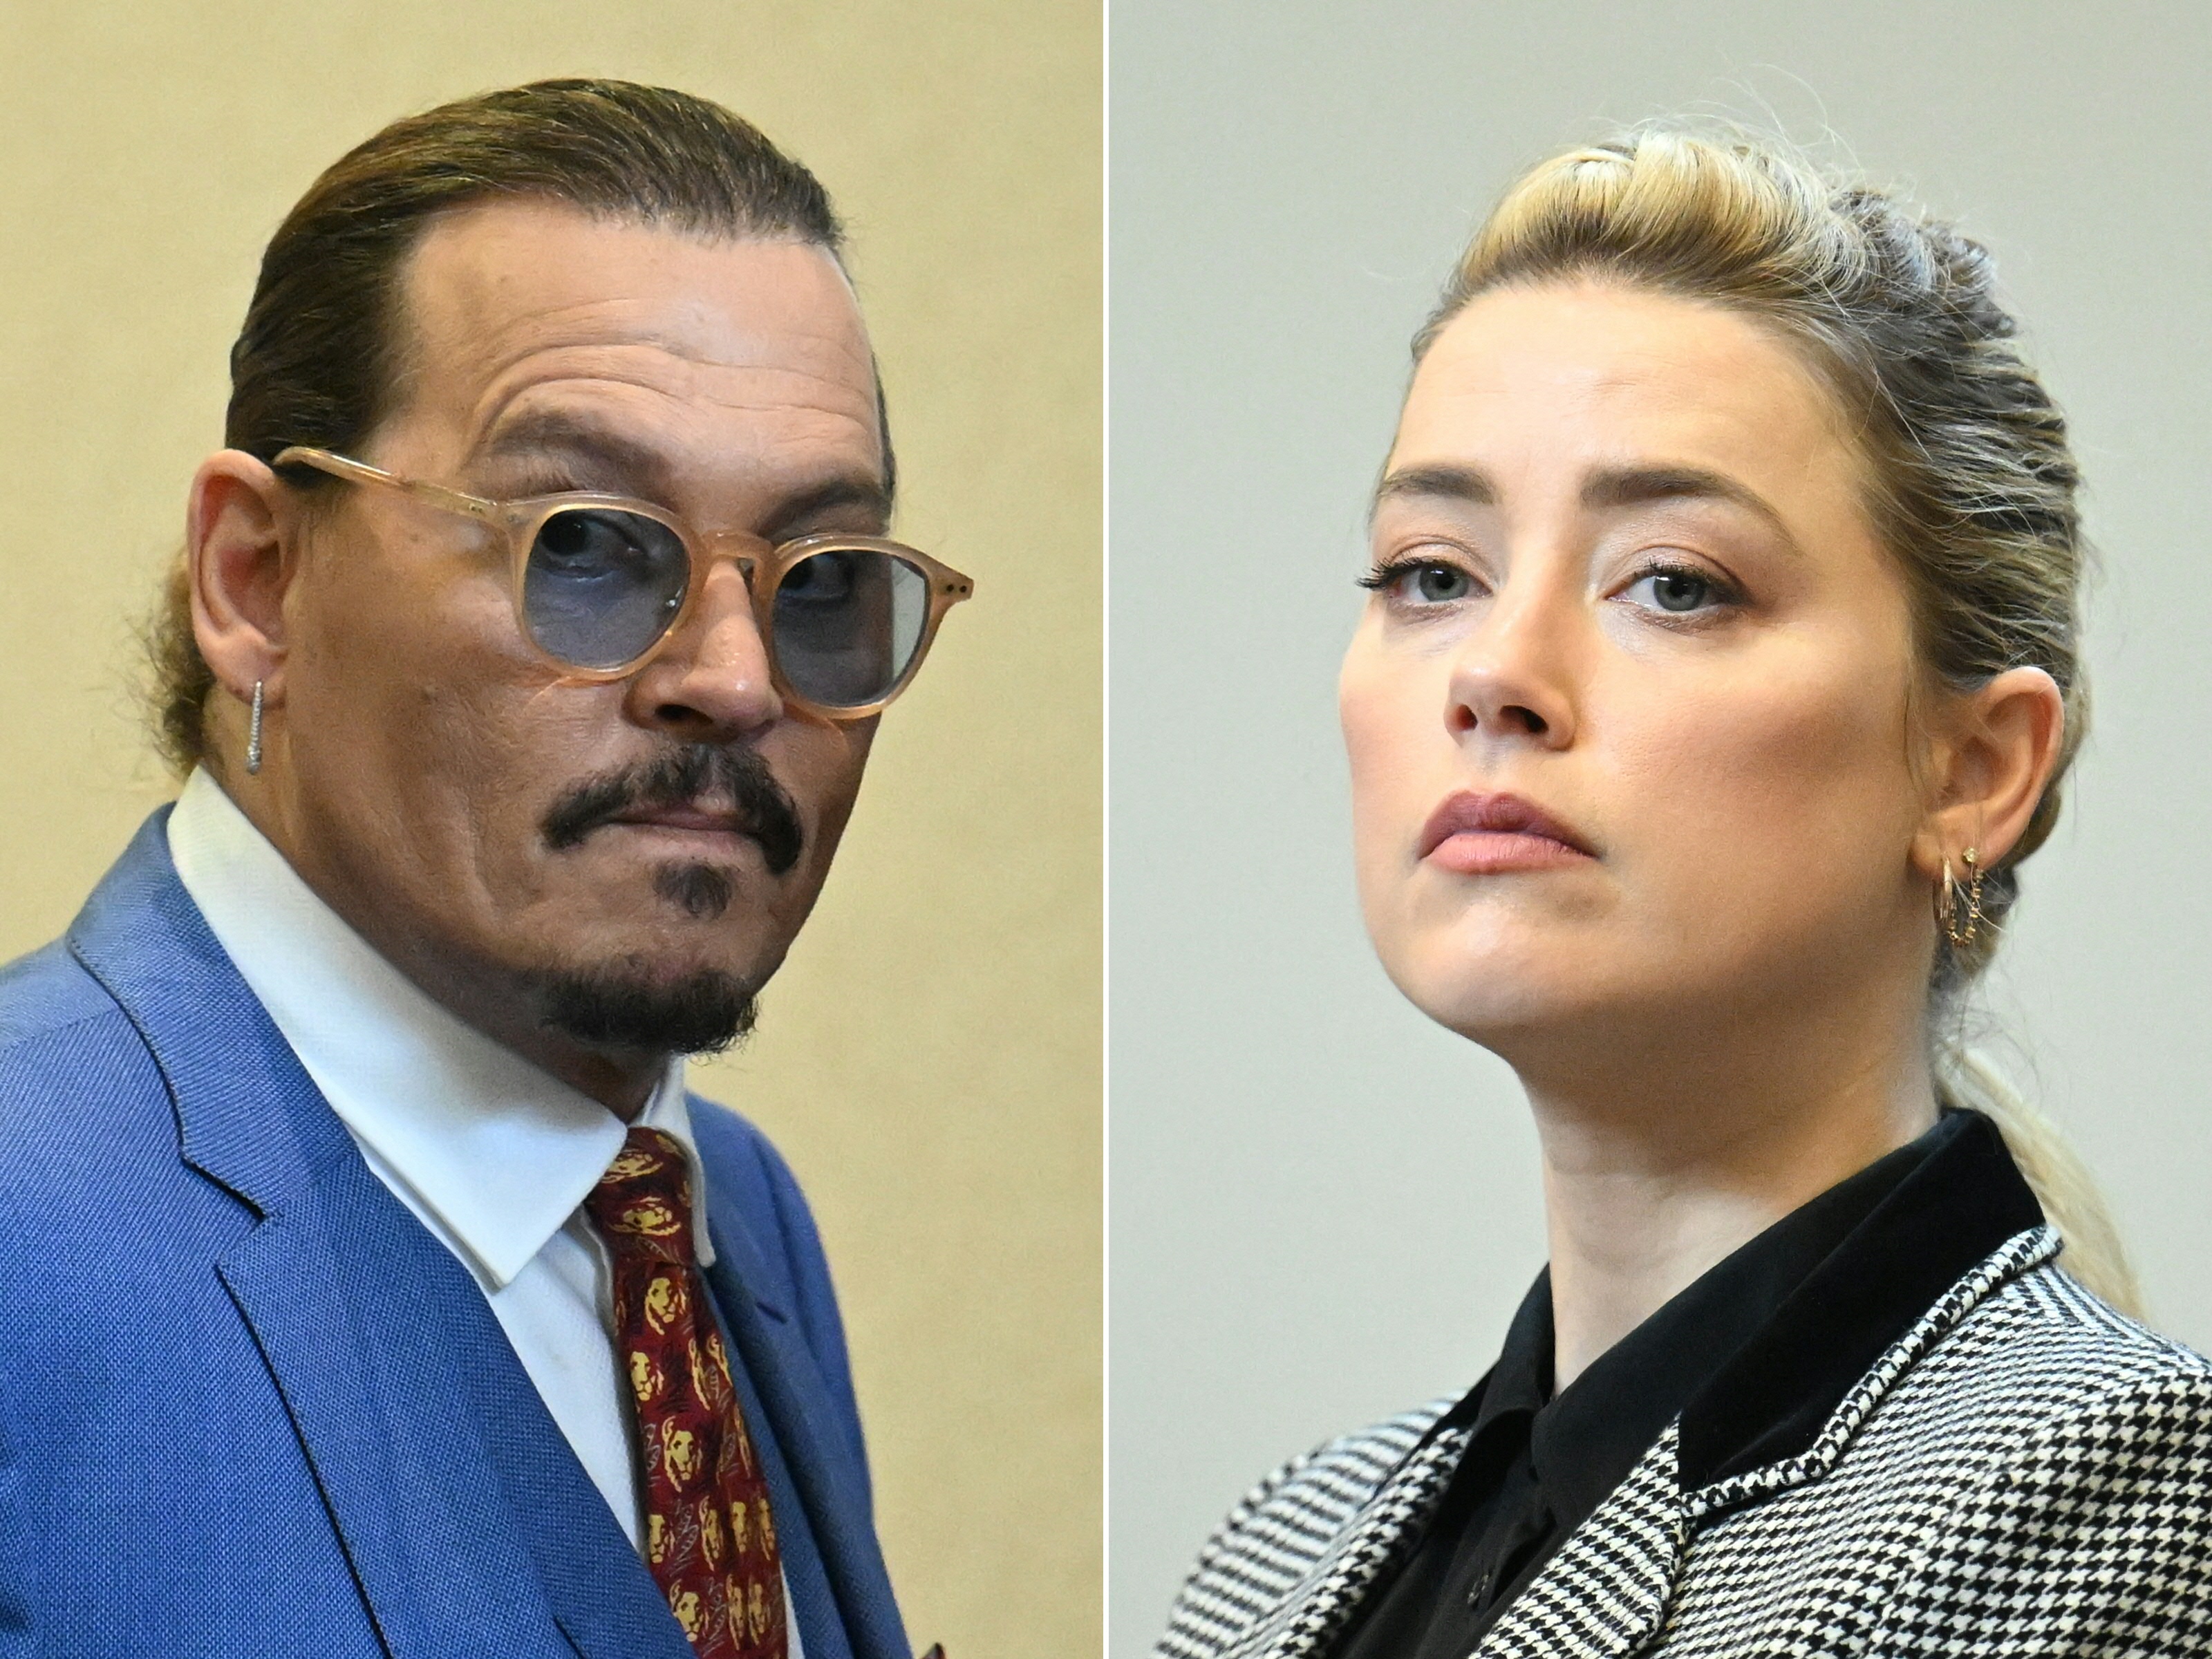 Salen a la luz los “trapos sucios” con los que Johnny Depp y Amber Heard trataron de atacarse